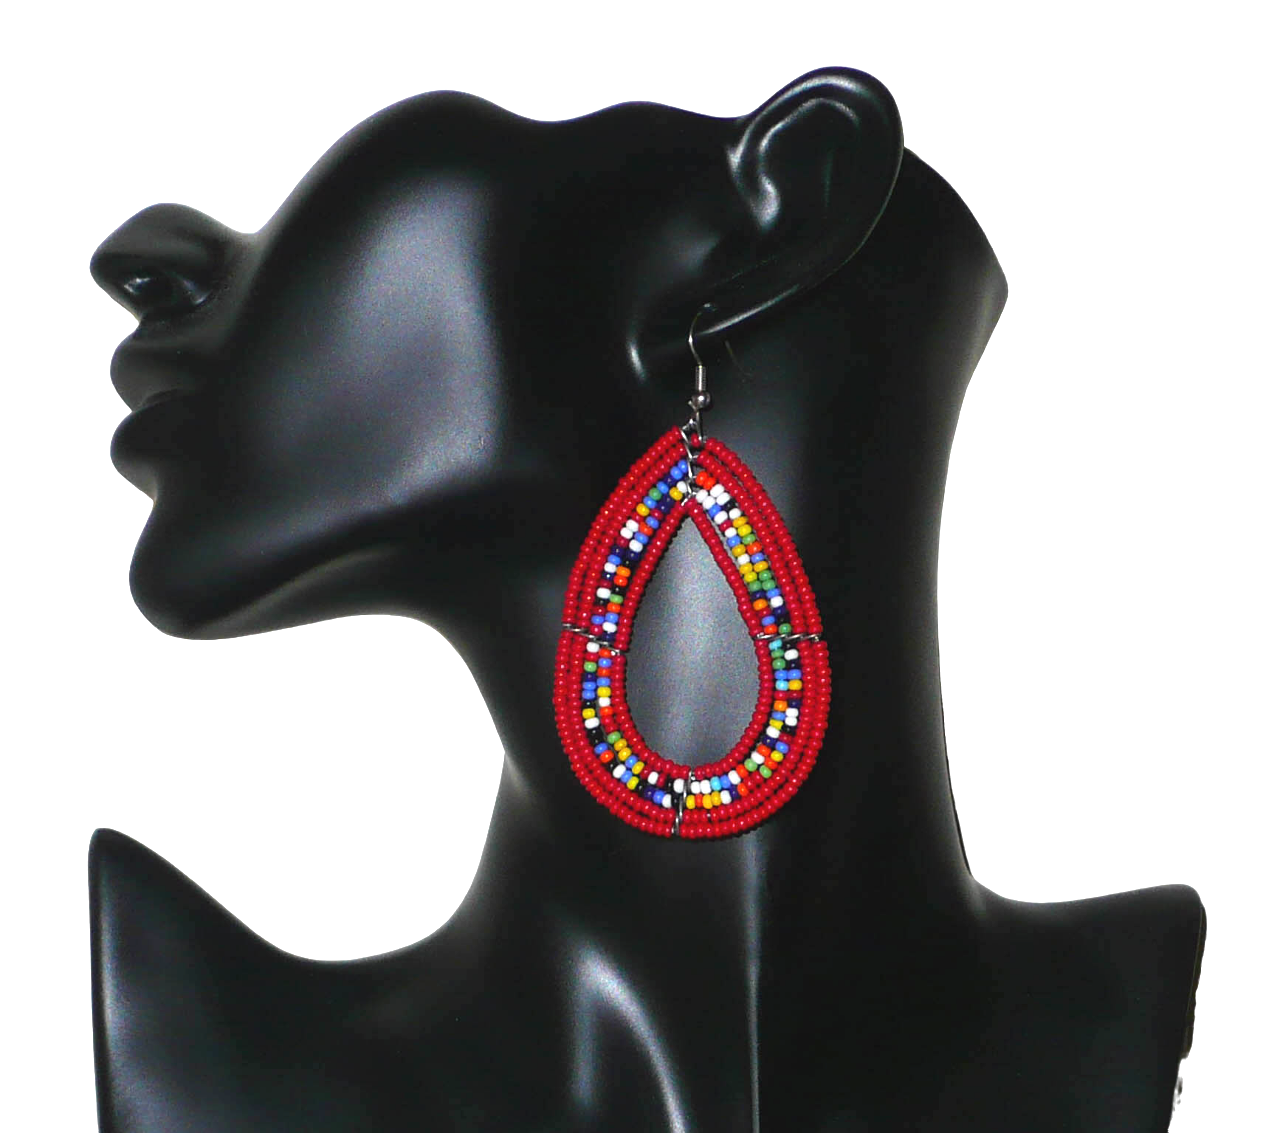 Bijoux rouges. Longues boucles d'oreilles ethniques Massai faites de perles de verre rouges et multicolores enfilées sur cinq rangées de fils de fer montés en forme de gouttes. Ces boucles d'oreilles mesurent 8 cm de long et 4,5 cm de large ; elles se portent sur des oreilles percées. Timeless Fineries